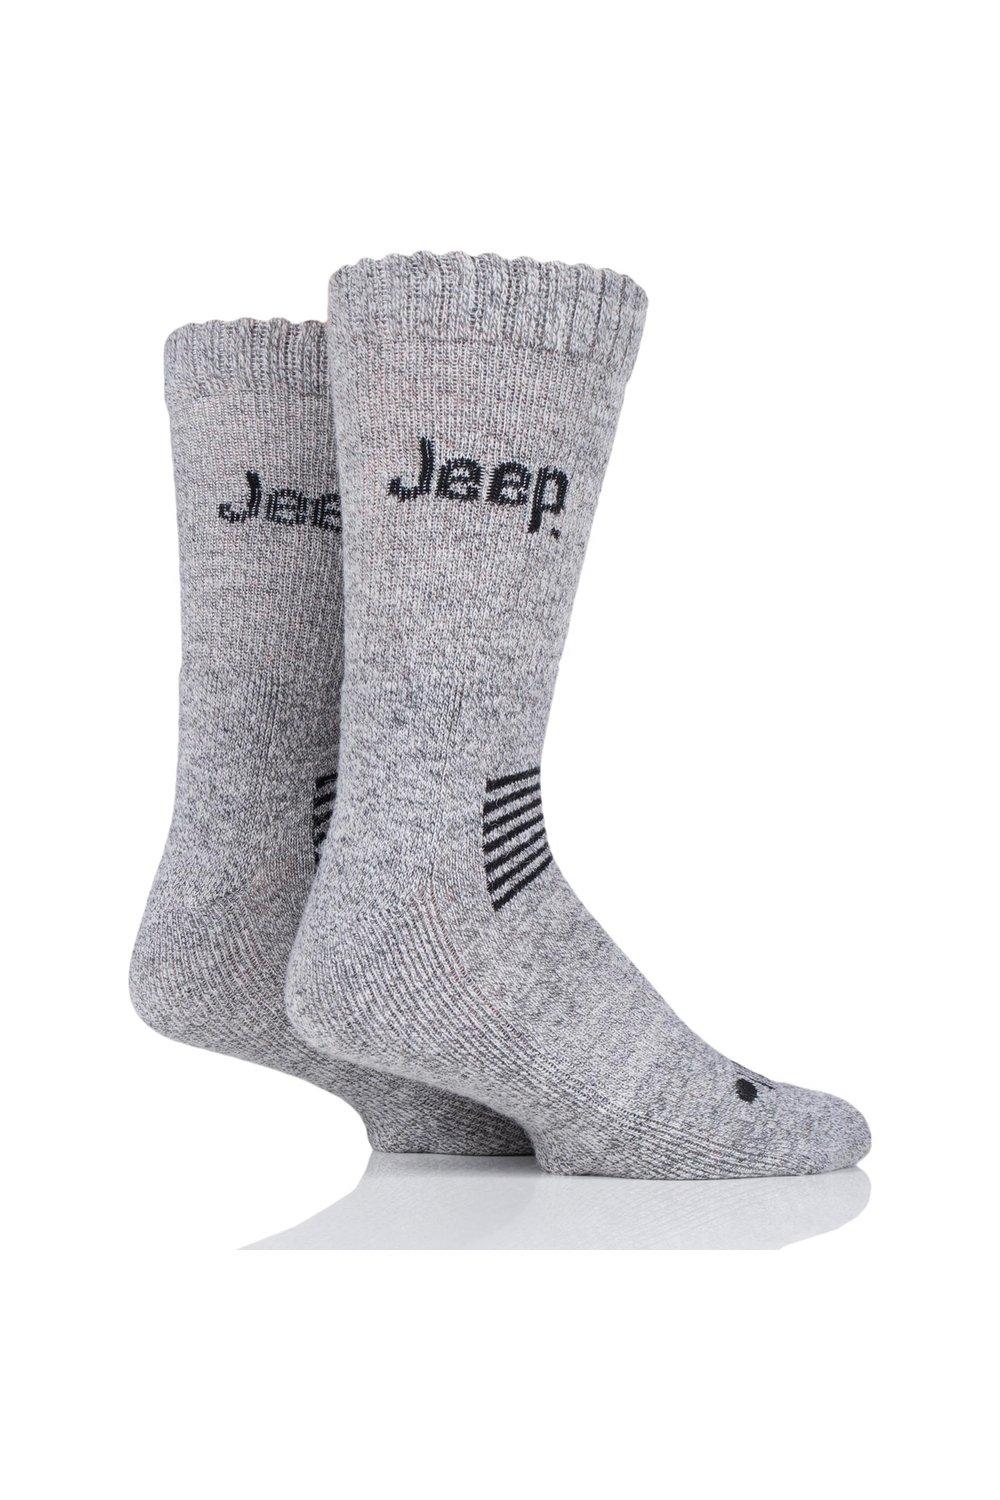 2 пары носков из смеси шерсти Jeep, серый брош э гипербола с половиной